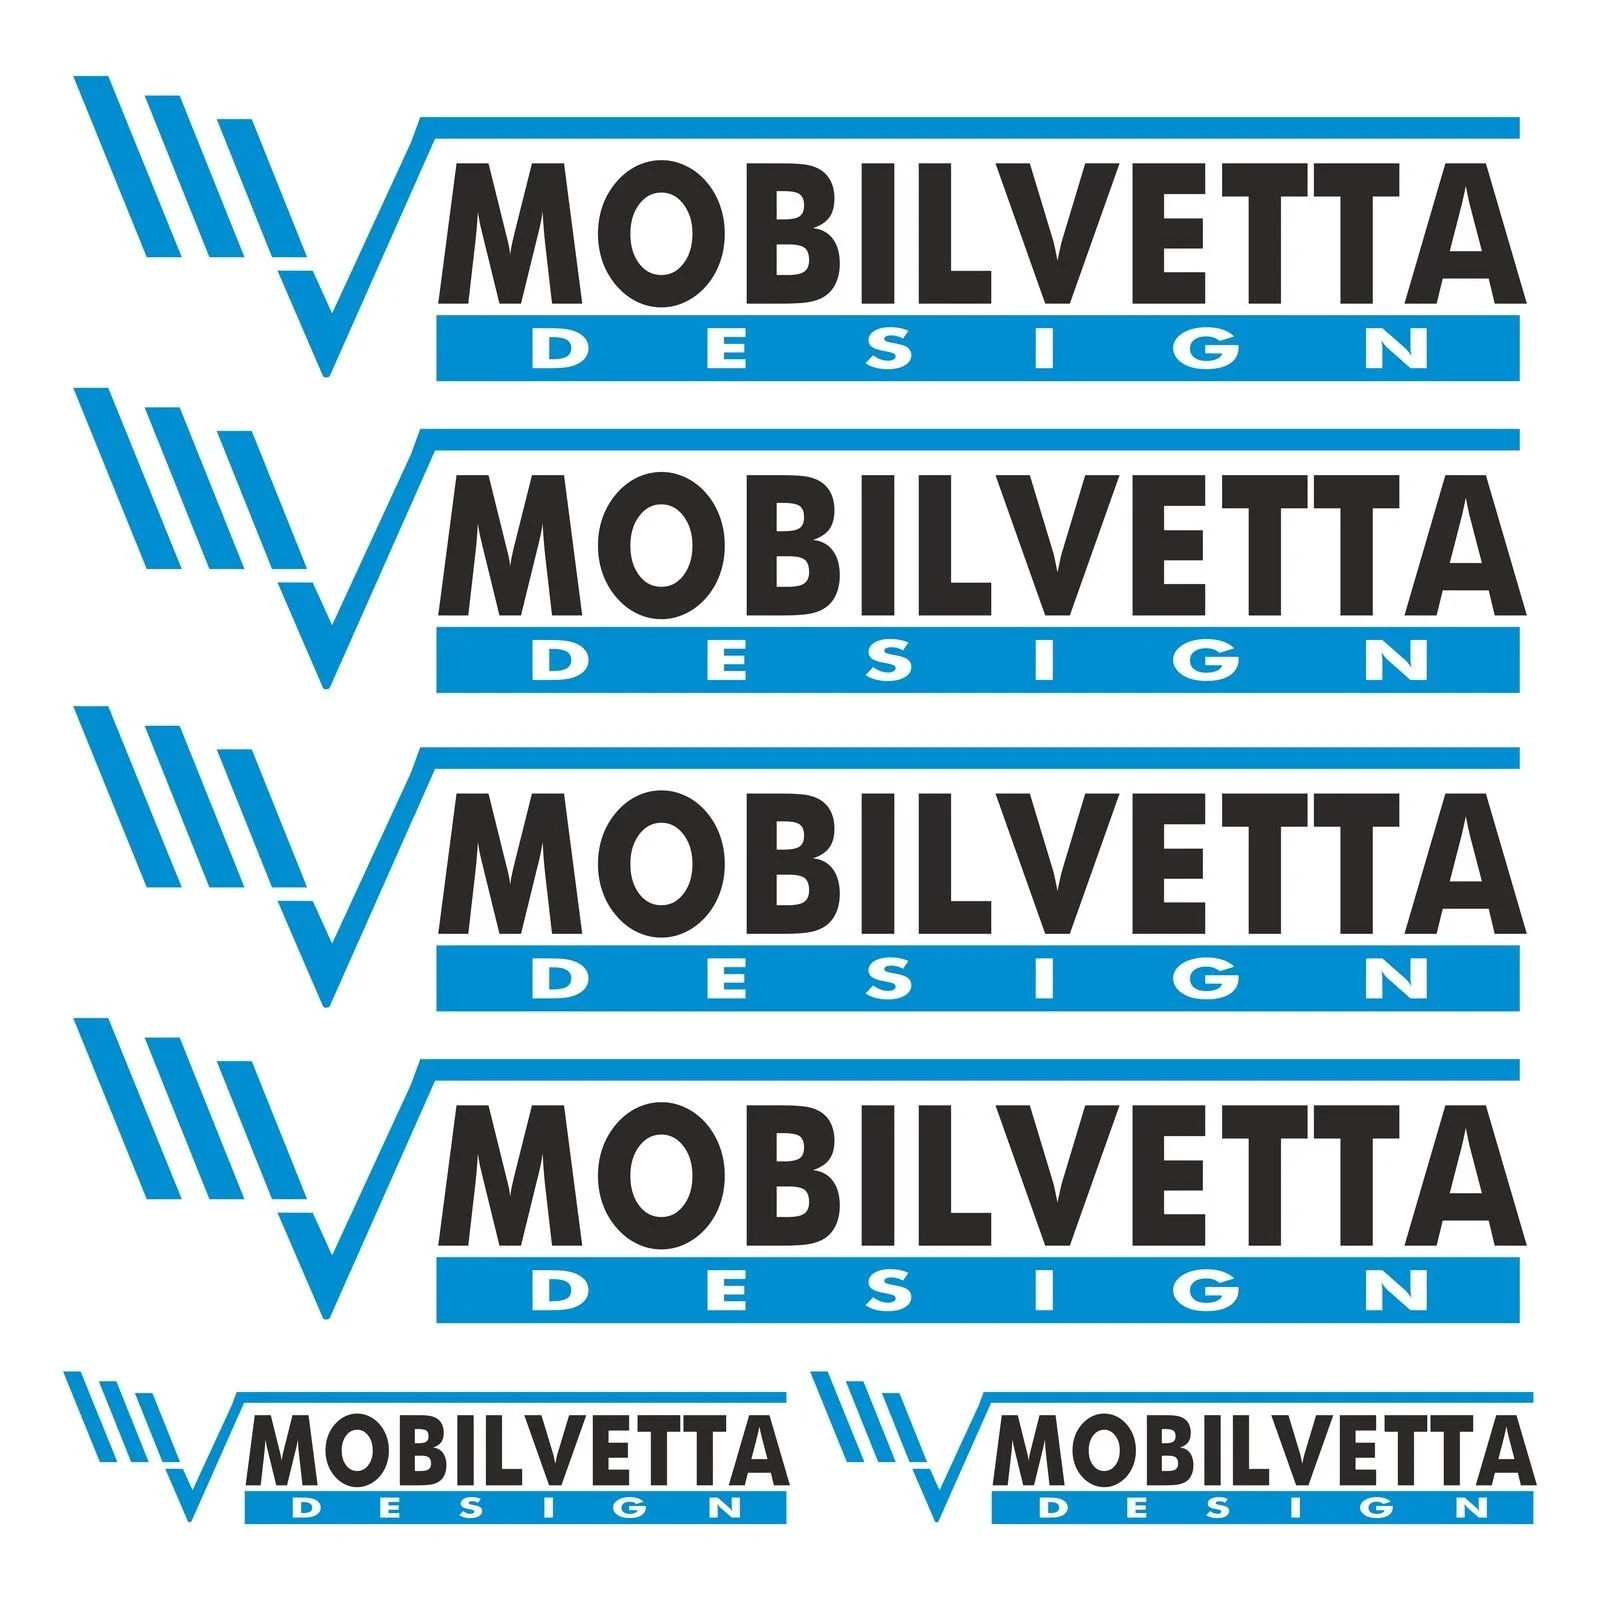 

For MOBILVETTA aufkleber sticker wohnmobil camper wohnwagen caravan 6 Sticker Pieces Car Styling